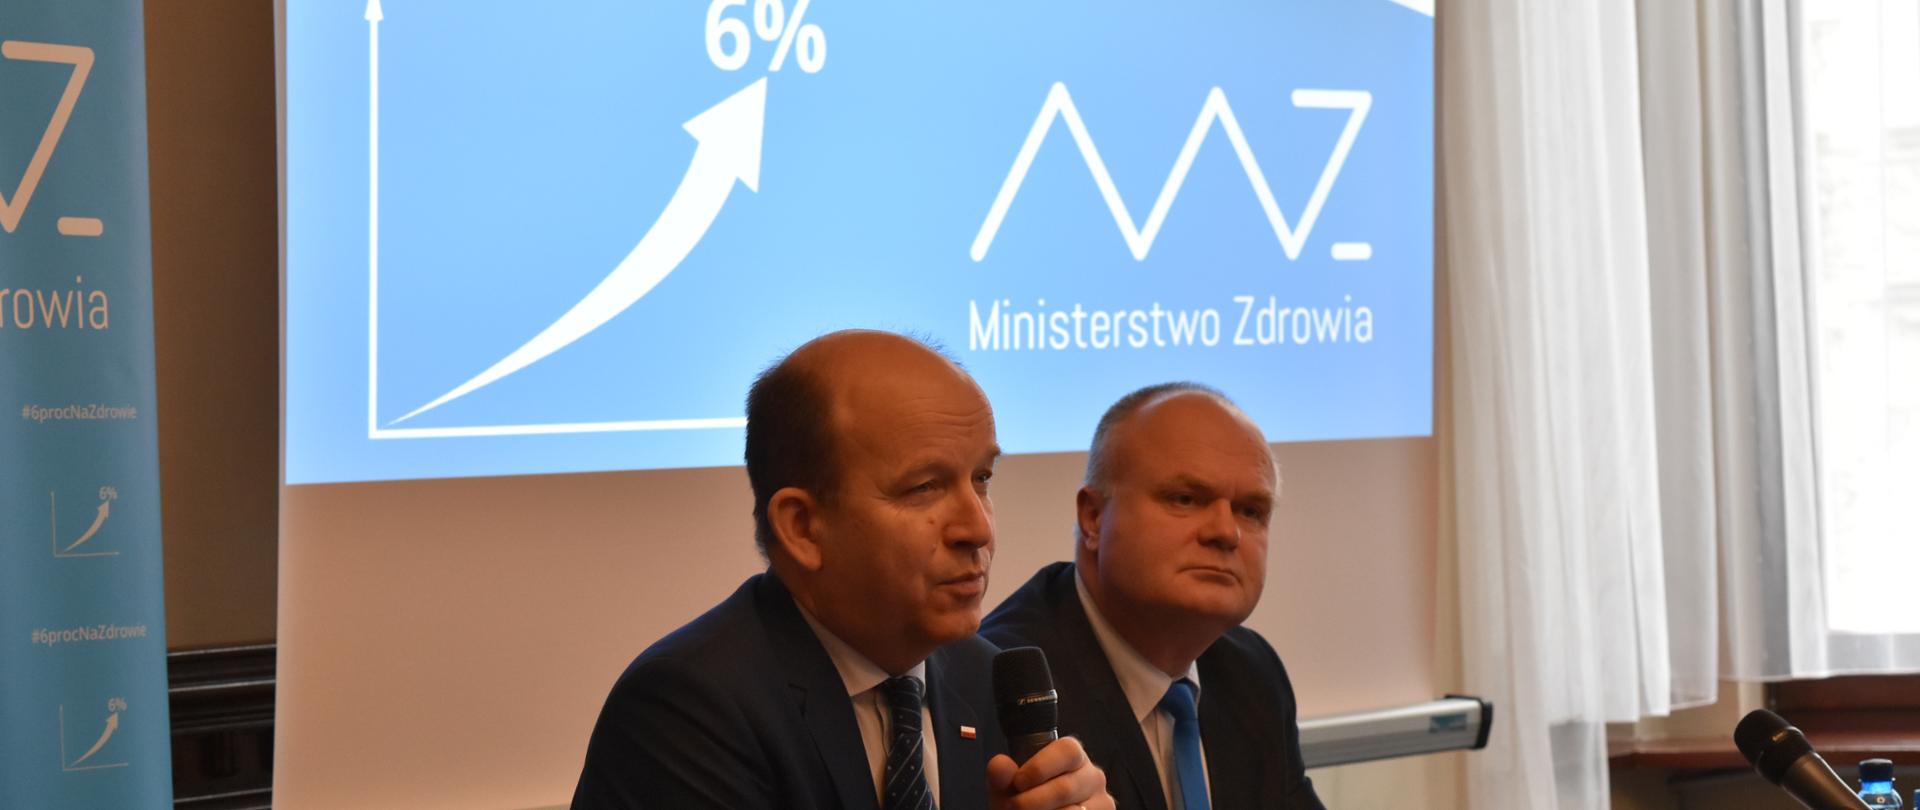 Minister Zdrowia Konstanty Radziwiłł siedzi przy stole i na tle prezentacji multimedialnej opowiada o wzroście nakładów na zdrowie do poziomu 6% PKB. 